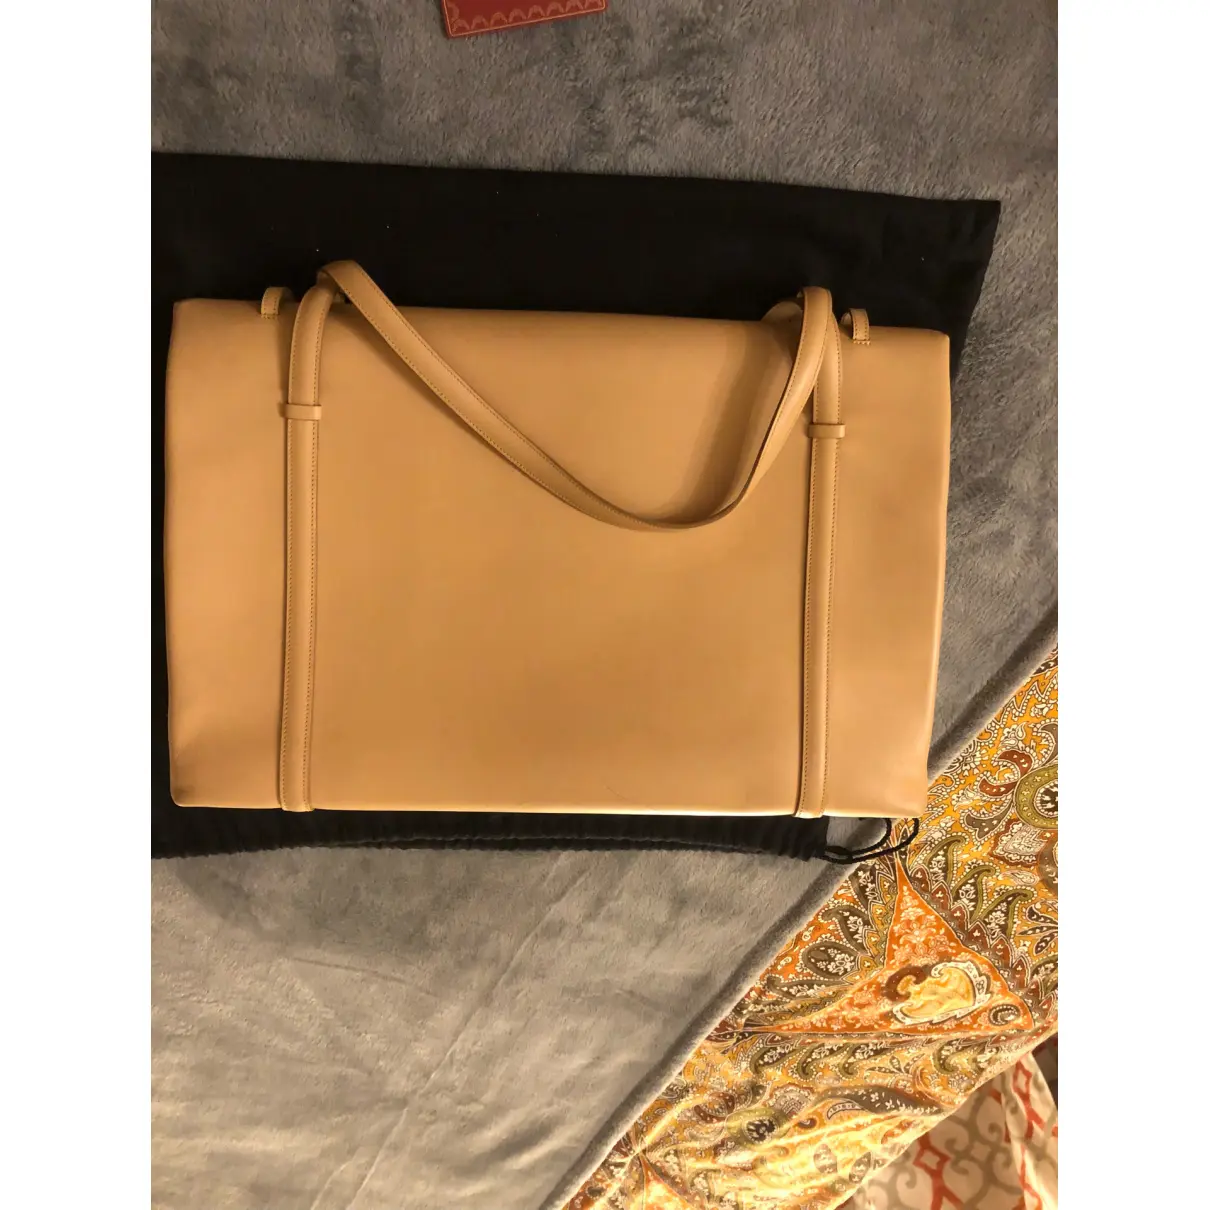 Cabochon leather handbag Cartier